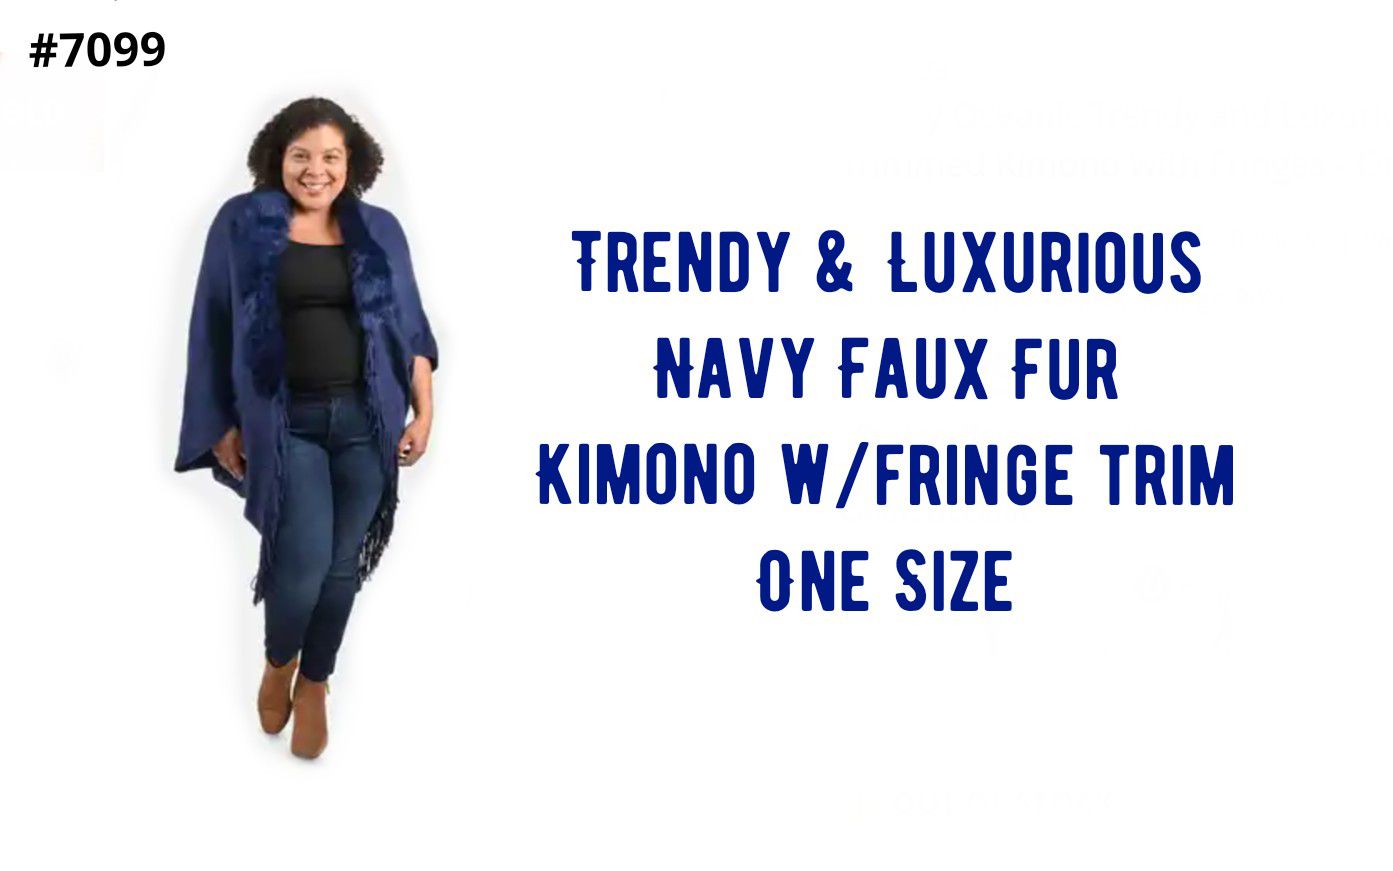 Navy Faux Fur Kimono strings Trim, one size, NWT...Now $14!!